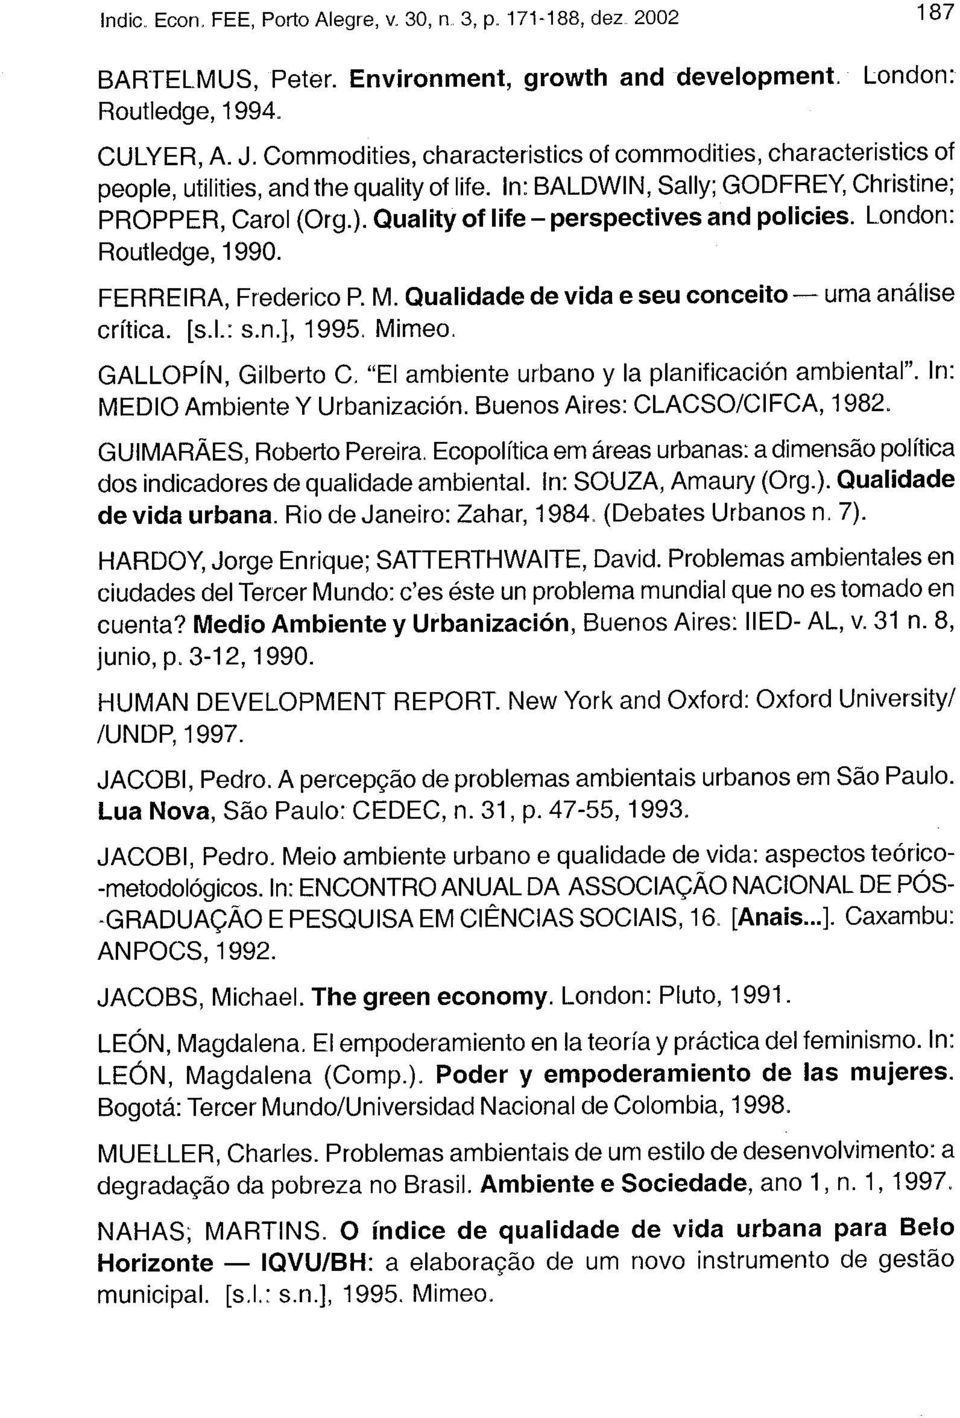 Quality of life - perspectives and policies. London: Routiedge, 1990. FERREIRA, Frederico P. M. Qualidade de vida e seu conceito uma análise crítica. [s.l: s.n.], 1995. Mimeo.